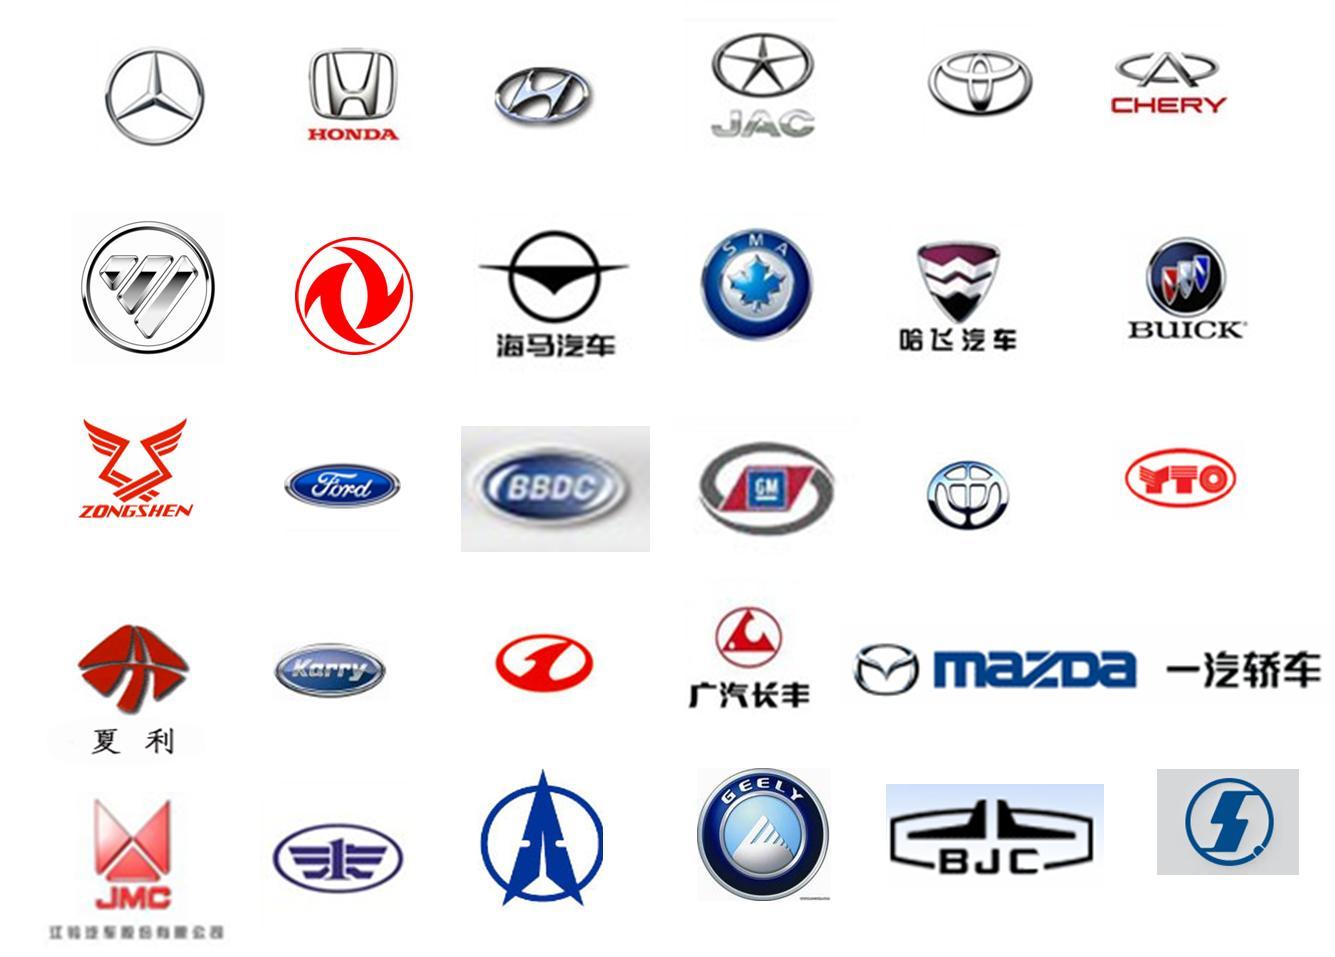 Китайский автомобиль со значком в. Эмблемы марок автомобилей. Значки китайских машин. Китайские автомобили марки. Марки китайских автомобилей со значками.